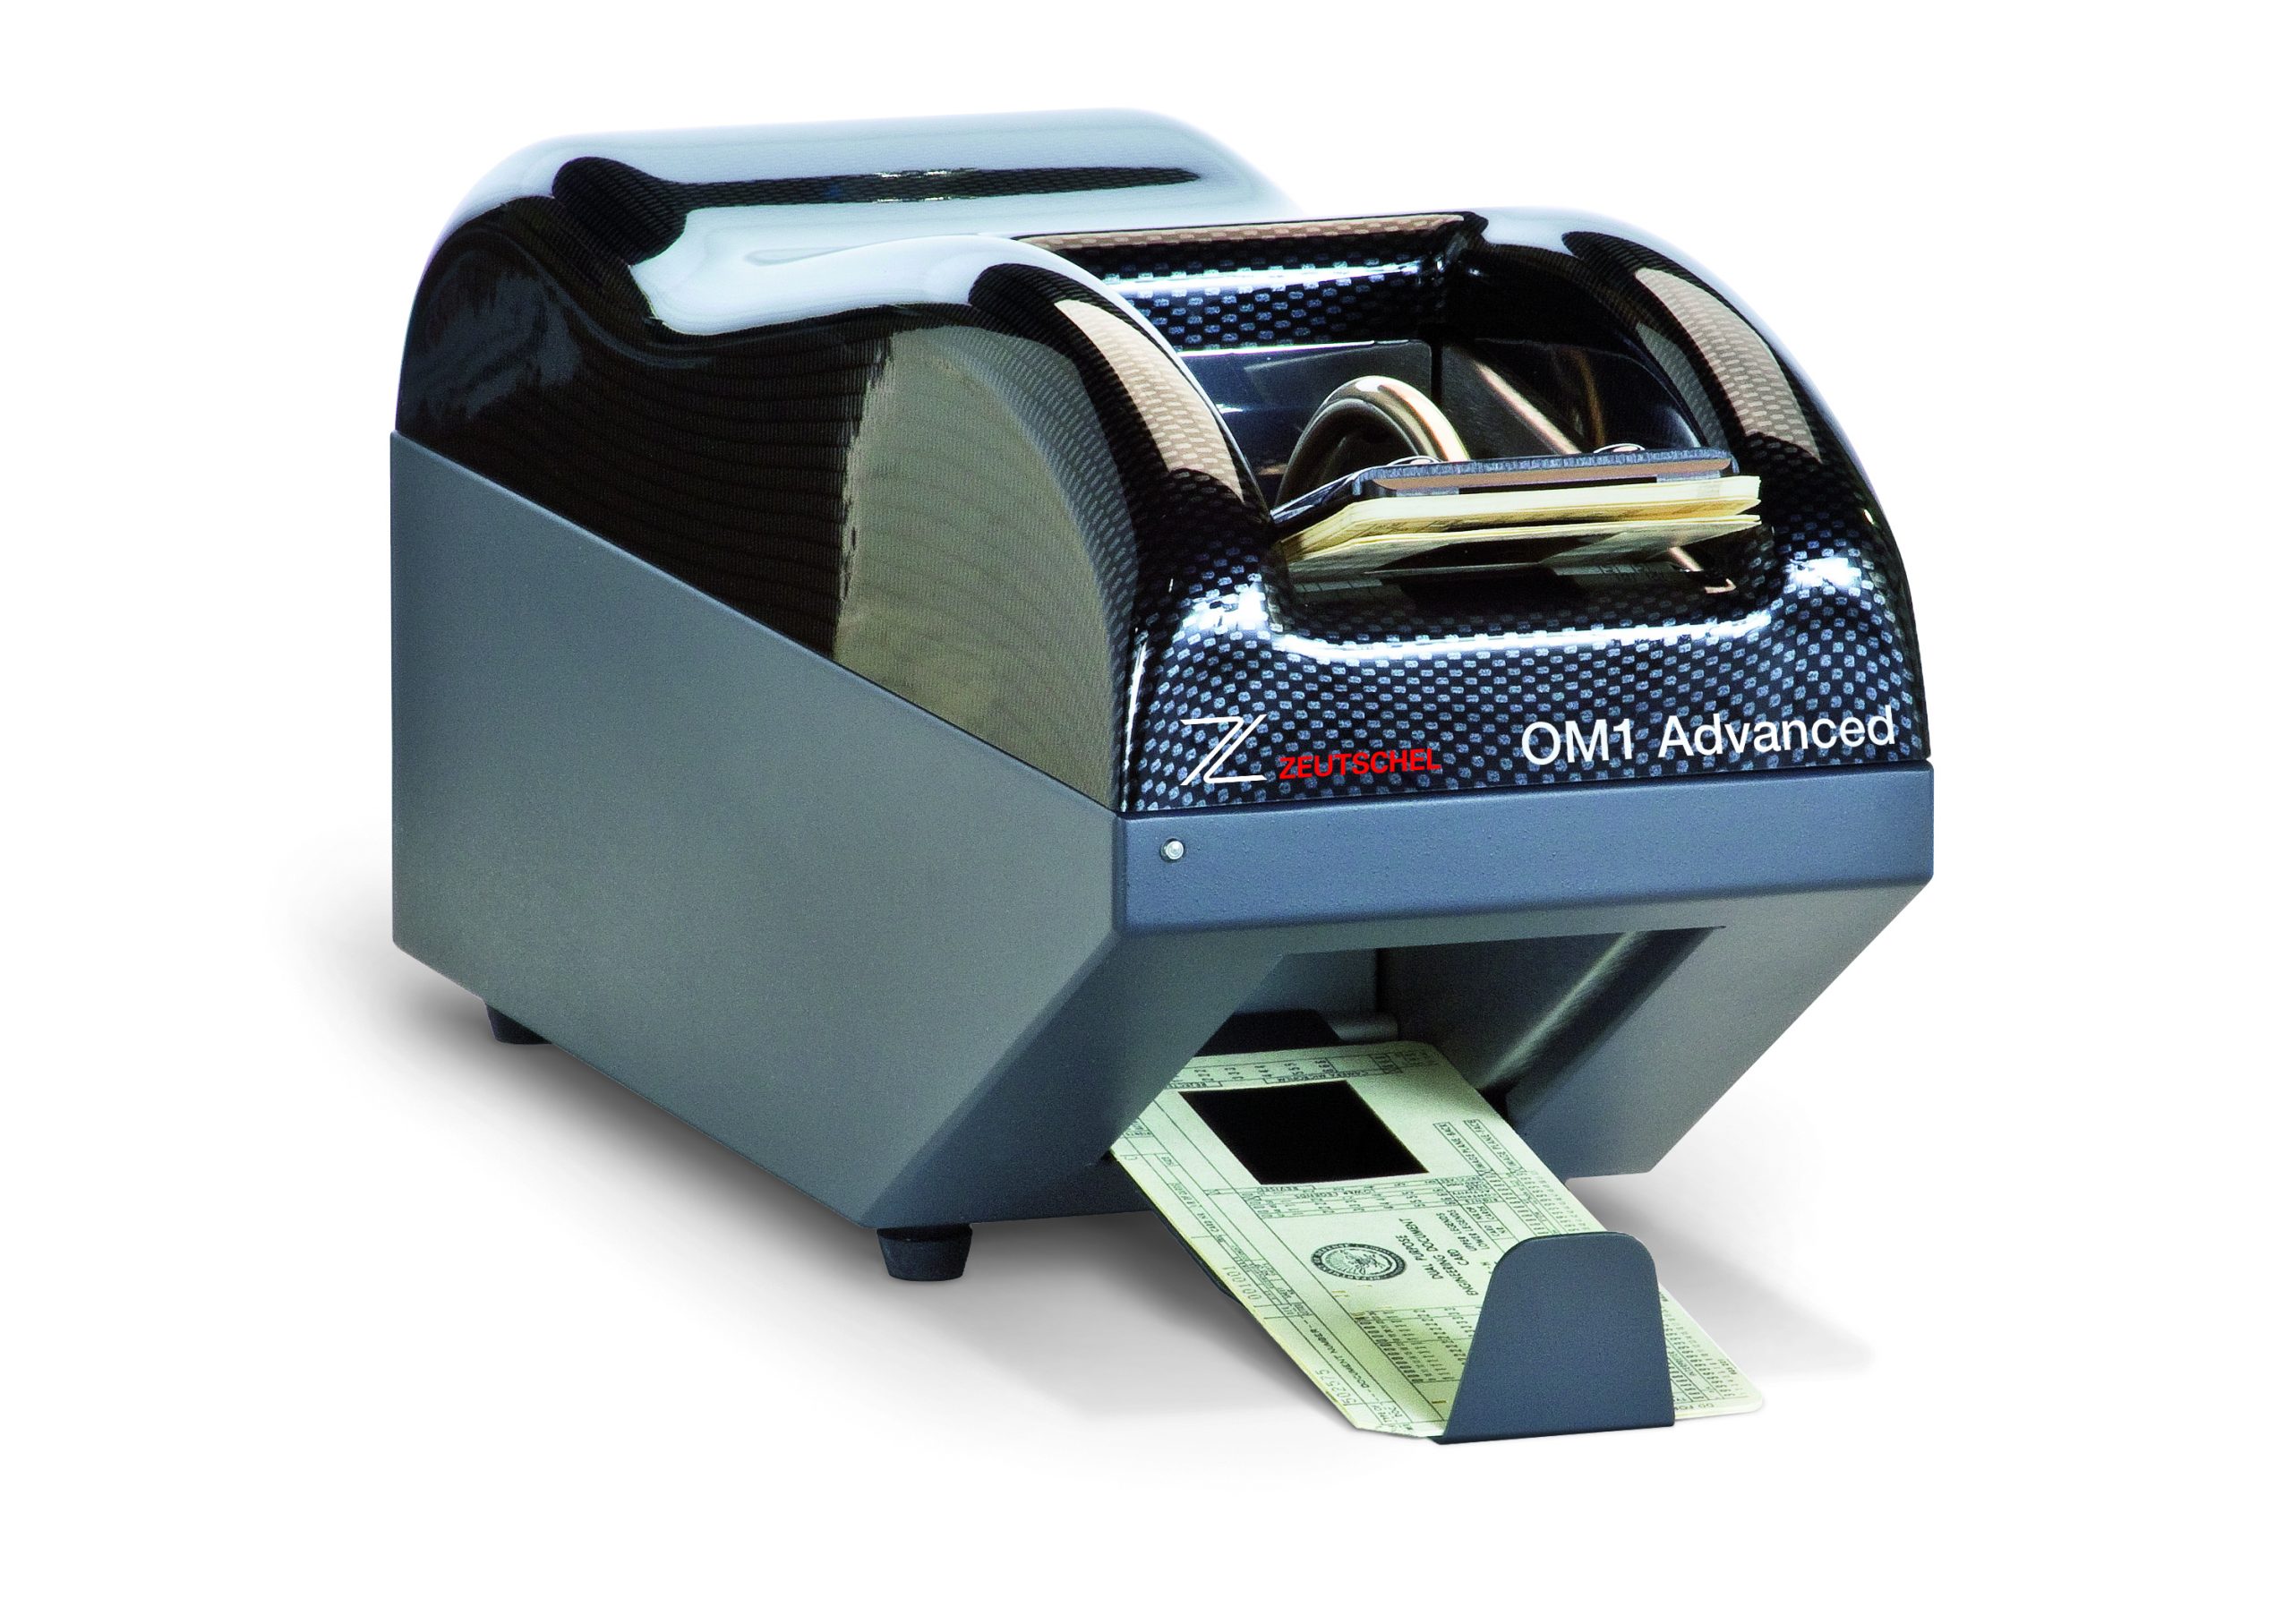 Aperture card scanner OM 1 Advanced